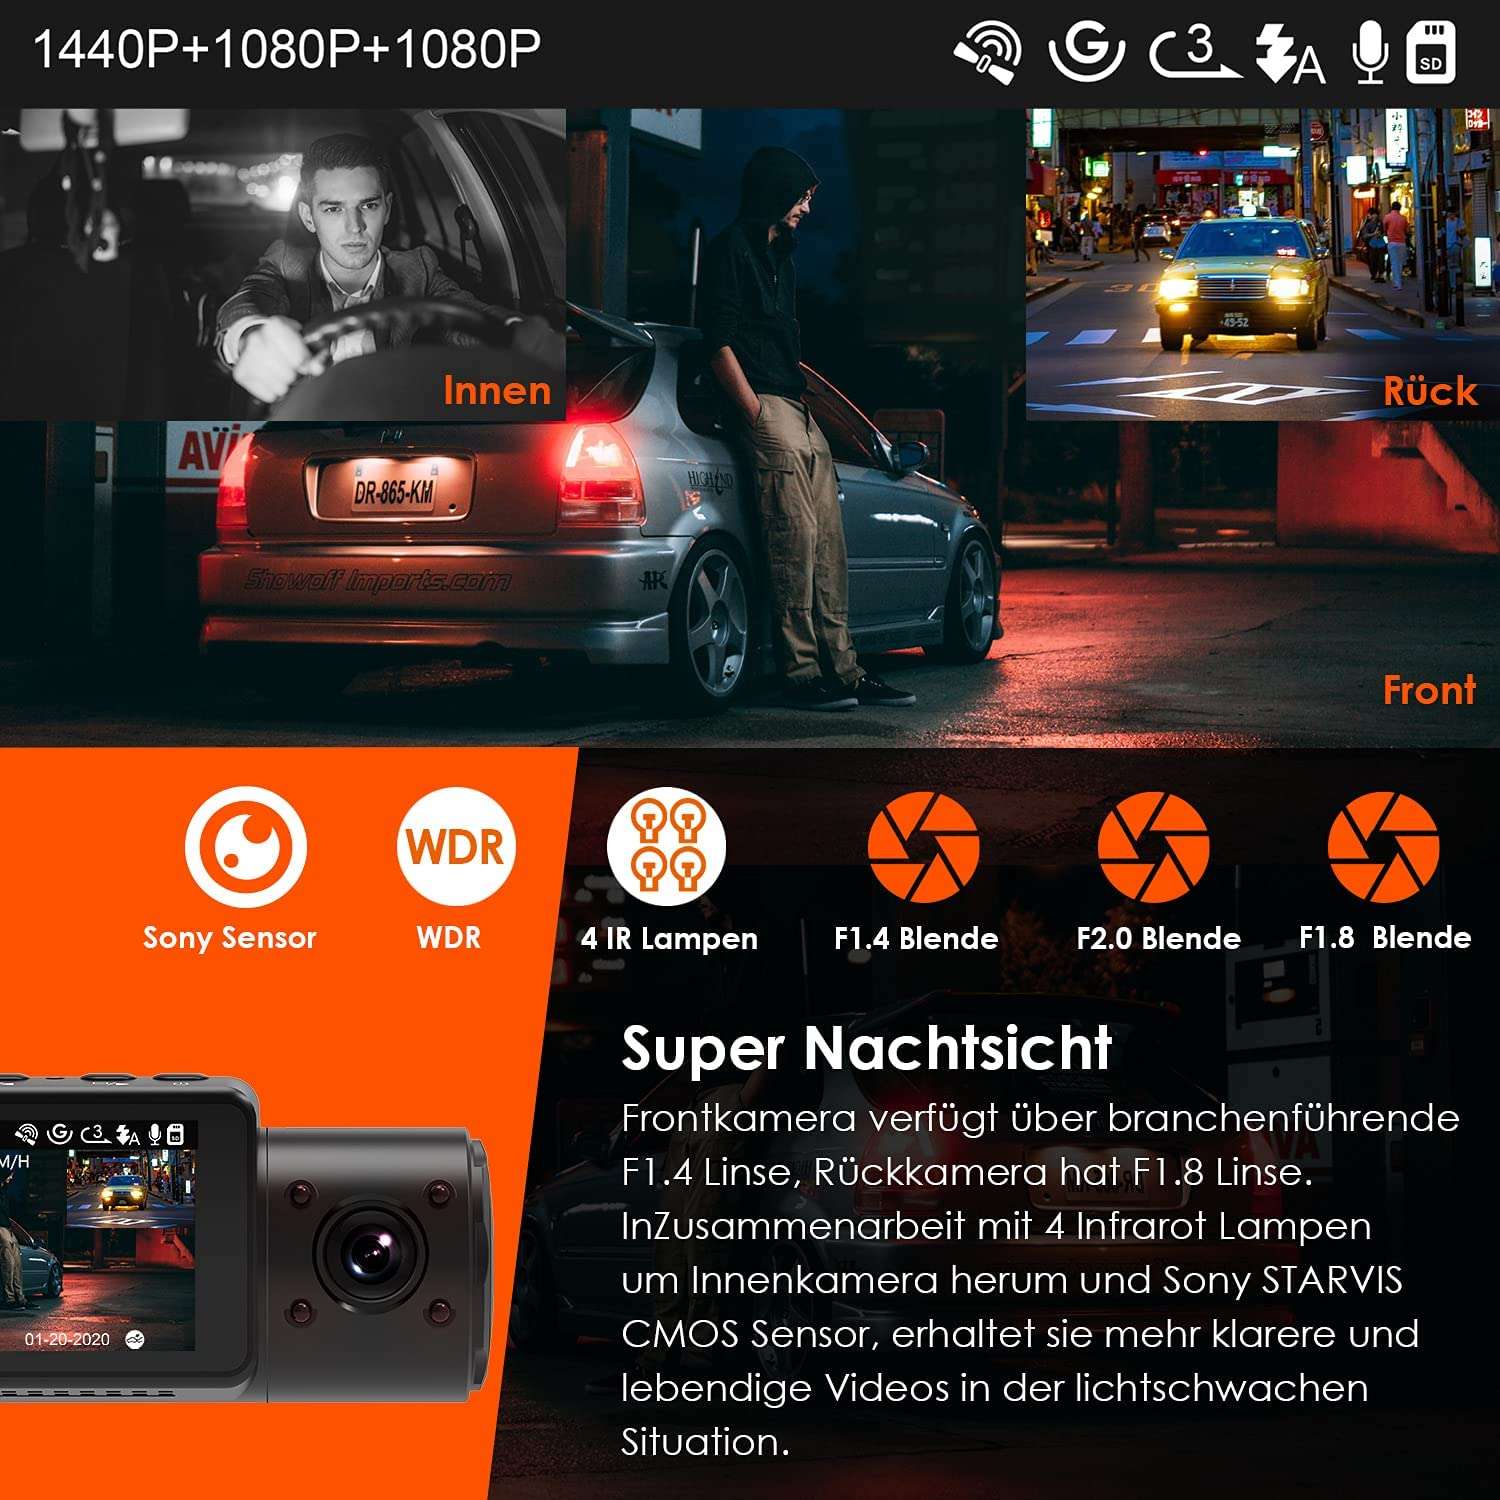 Dashcam Vantrue N4 a 3 canali 1440p | con GPS e scheda SD - pacchetto